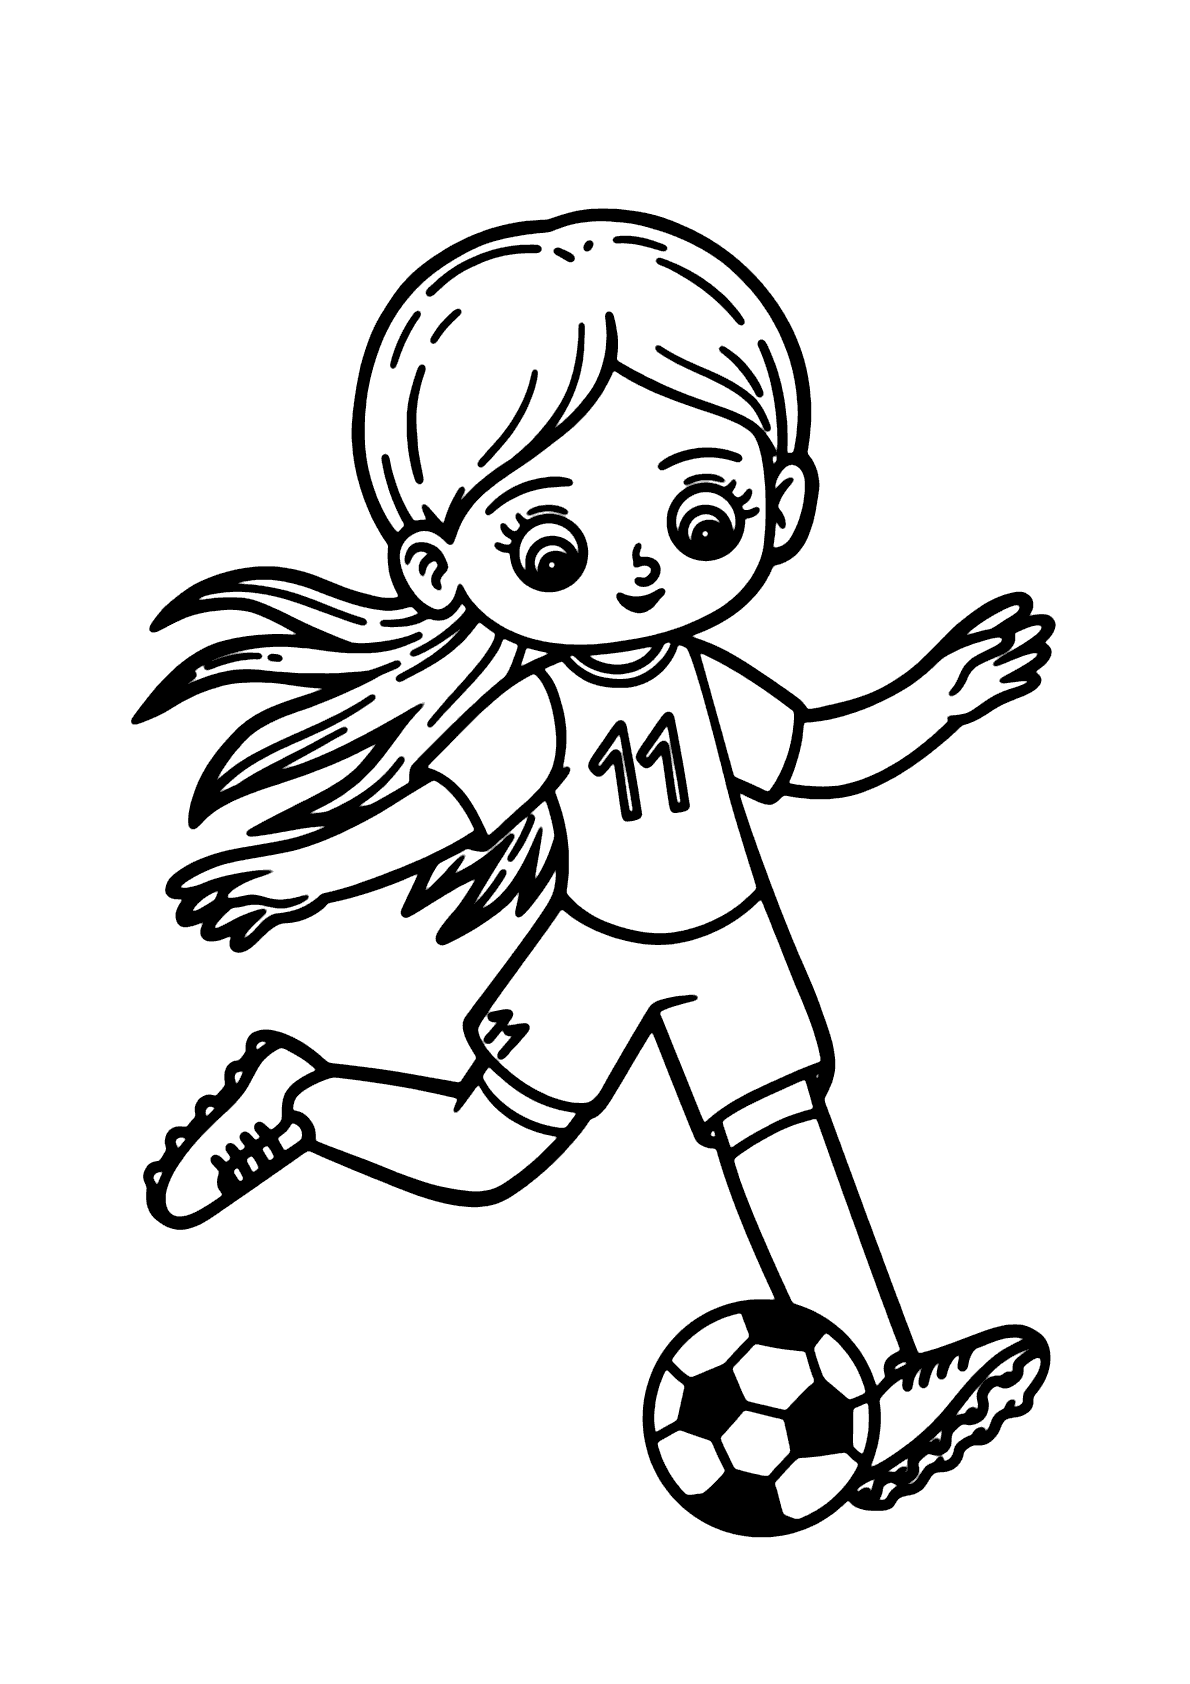 Resultado de imagem para garotas jogando futebol desenho